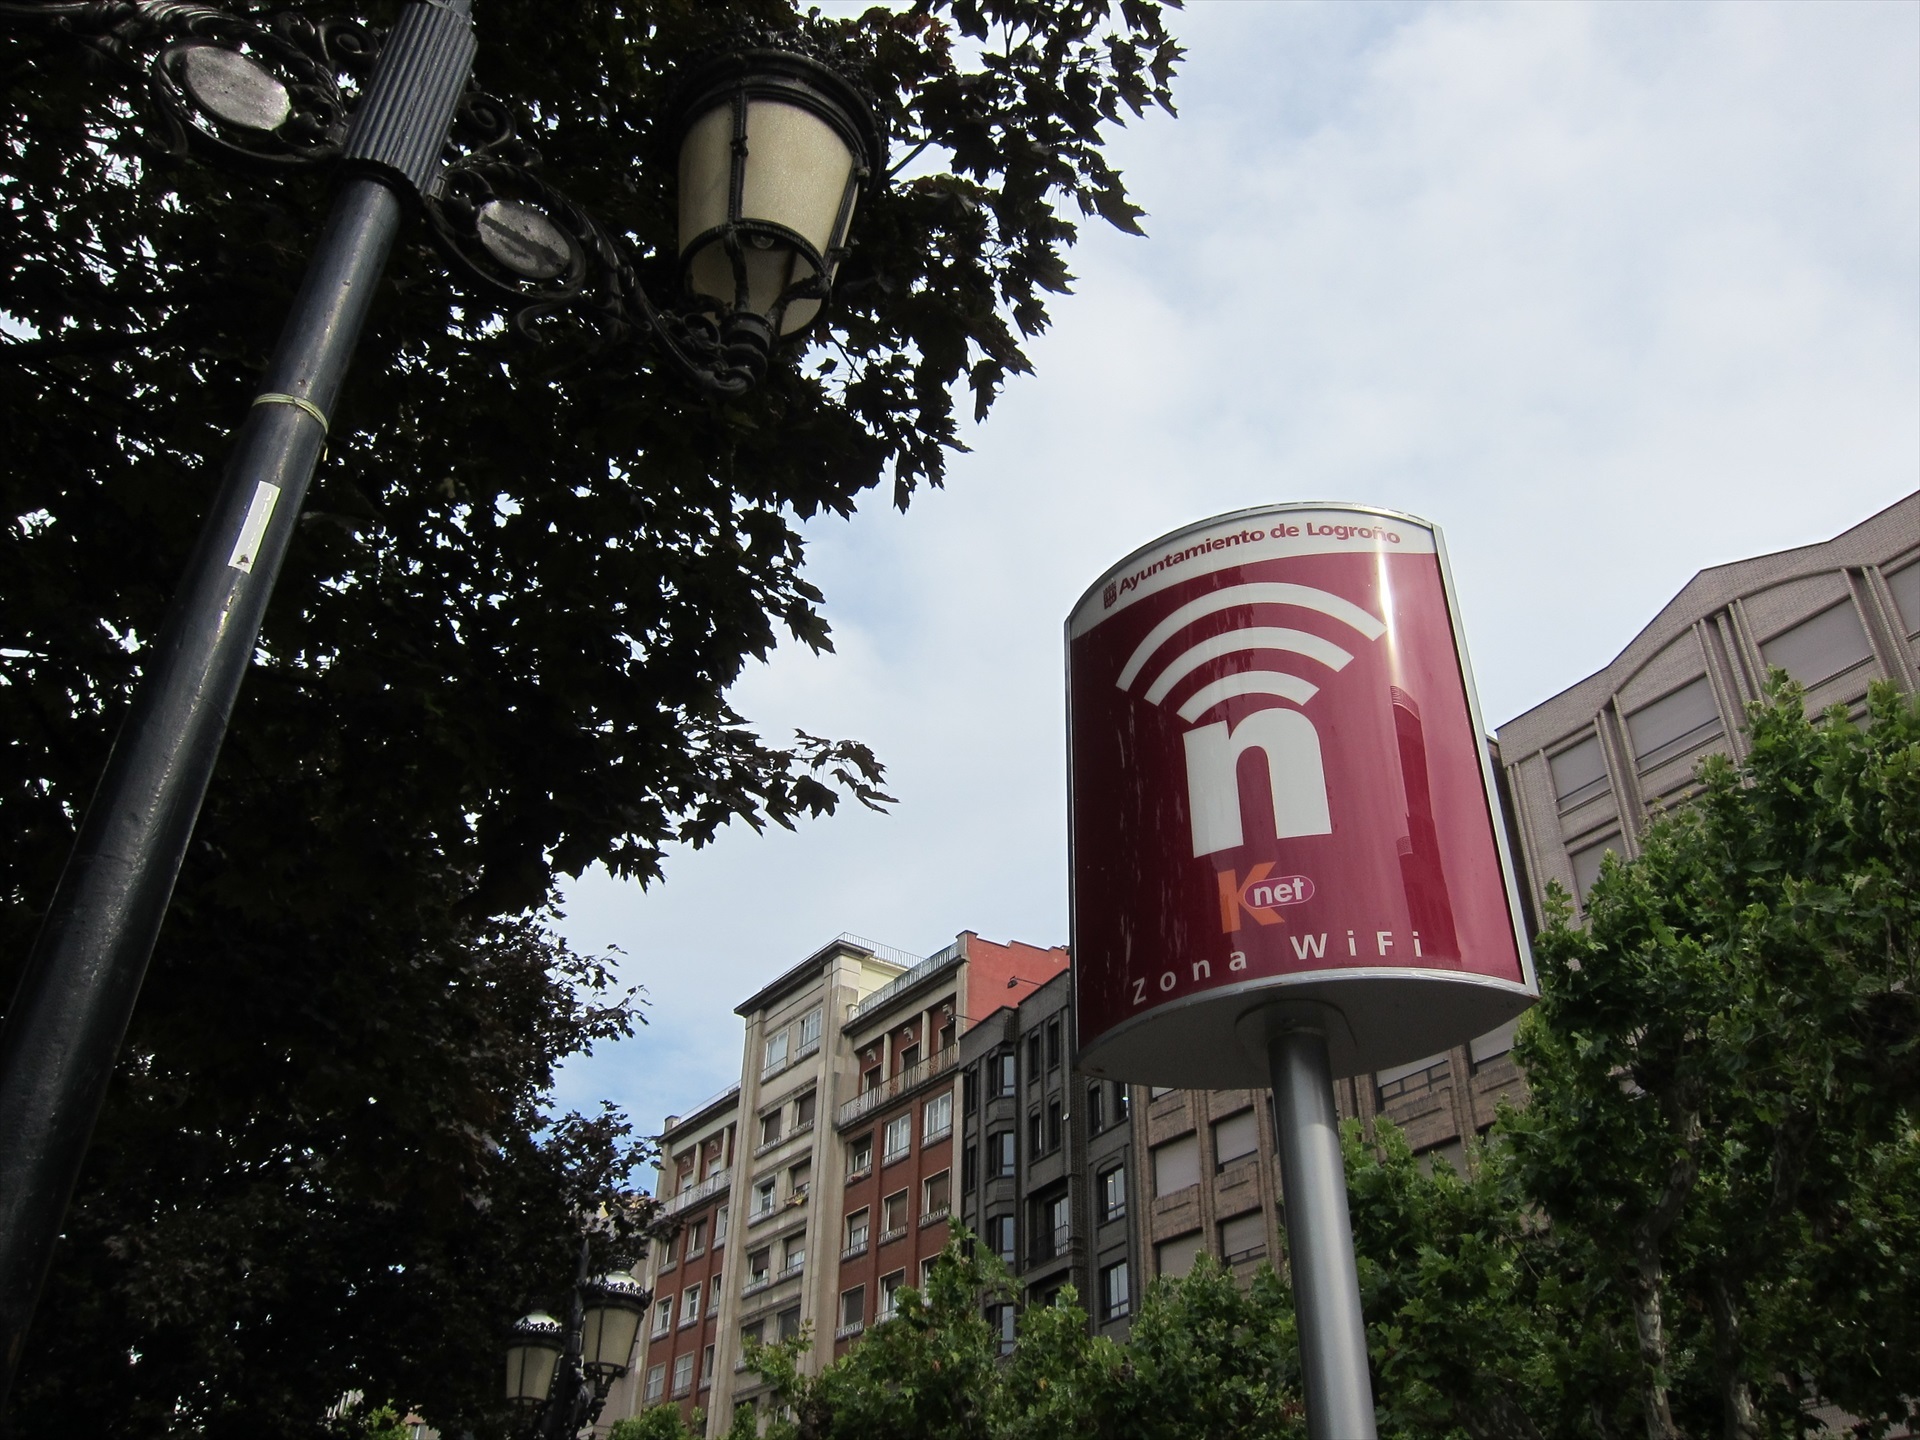 Zona Wi-Fi en Logroño (Foto: Europa Press)